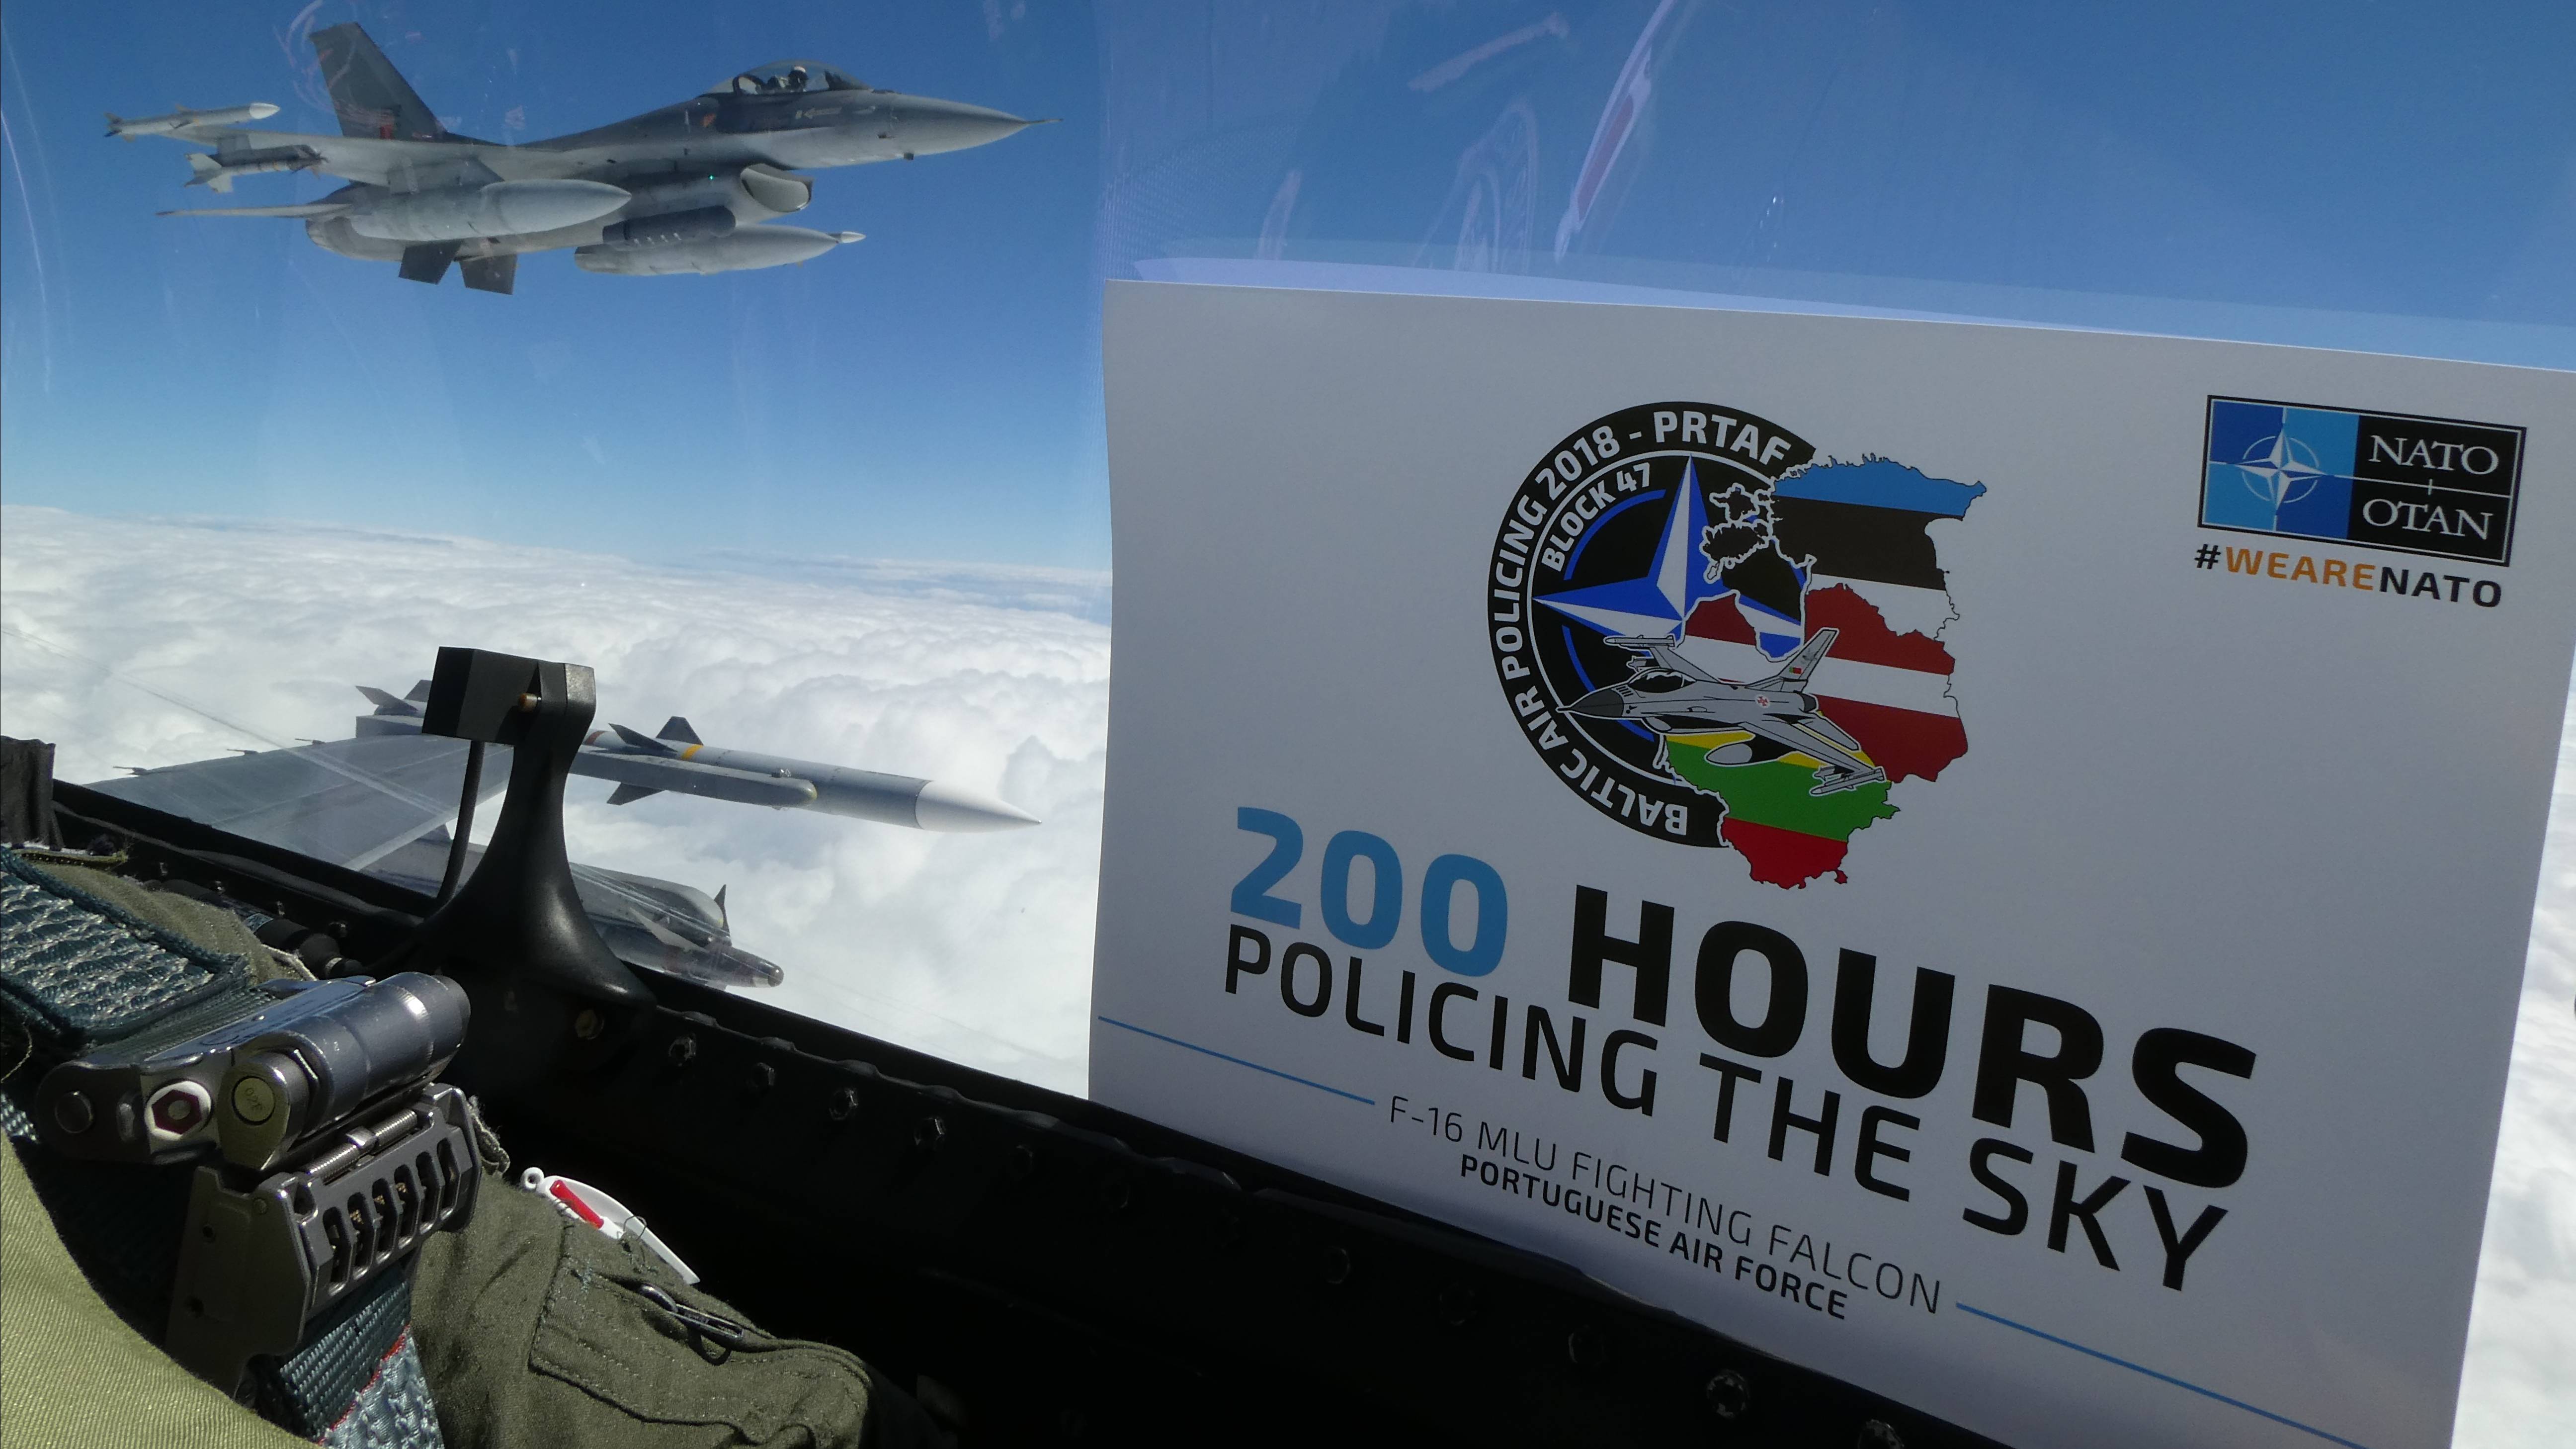 F-16 completa 200 horas de voo no Baltic Air Policing 2018